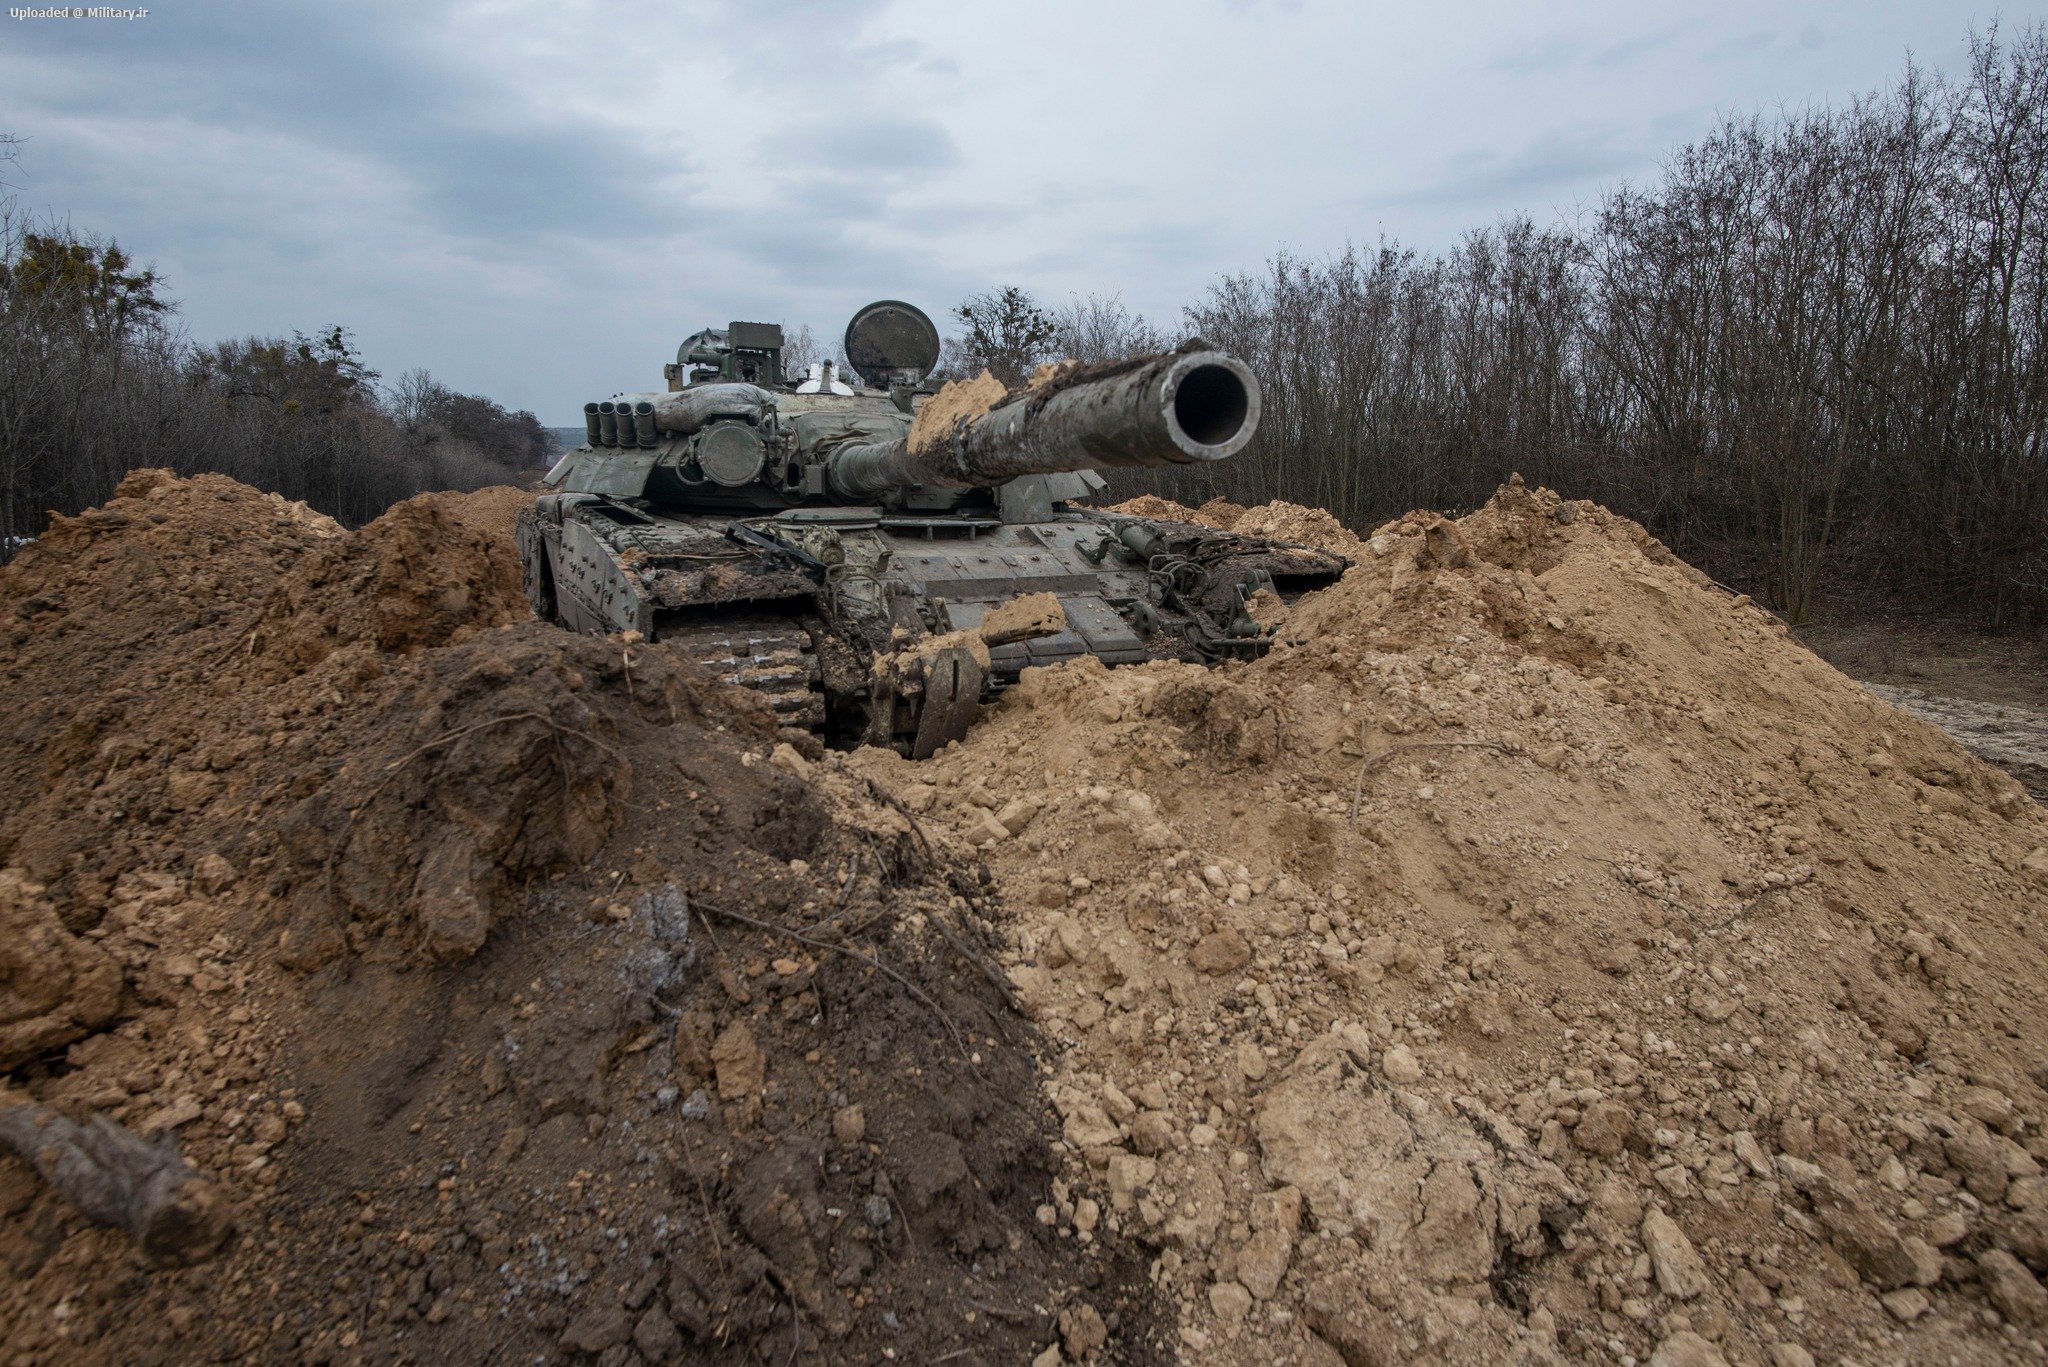 capture_a_Russian_T-80U_tank2C_cargo_tru